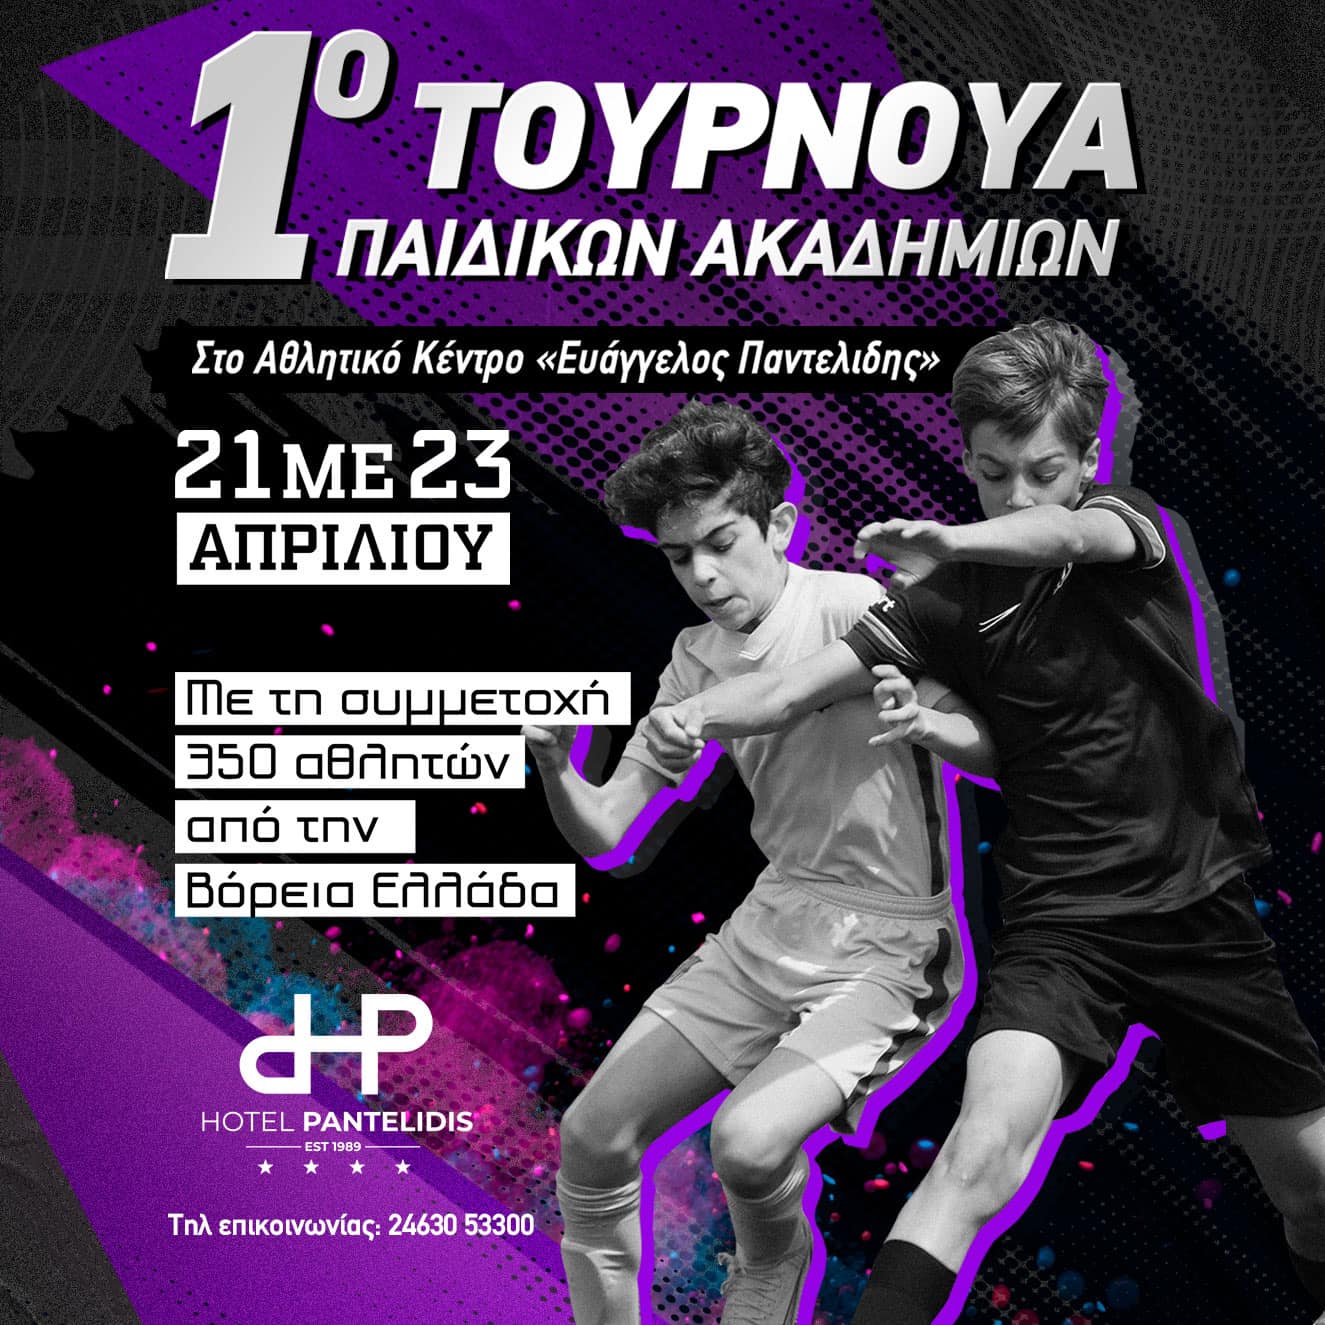 Eordaialive.com - Τα Νέα της Πτολεμαΐδας, Εορδαίας, Κοζάνης Με τη συμμέτοχή 350 αθλητών από όλη τη Βόρεια Ελλάδα , ξεκίνησε το 1ο Τουρνουά παιδικών ακαδημιών στο Αθλητικό Κέντρο Ευάγγελος Παντελίδης (βίντεο φωτογραφίες)